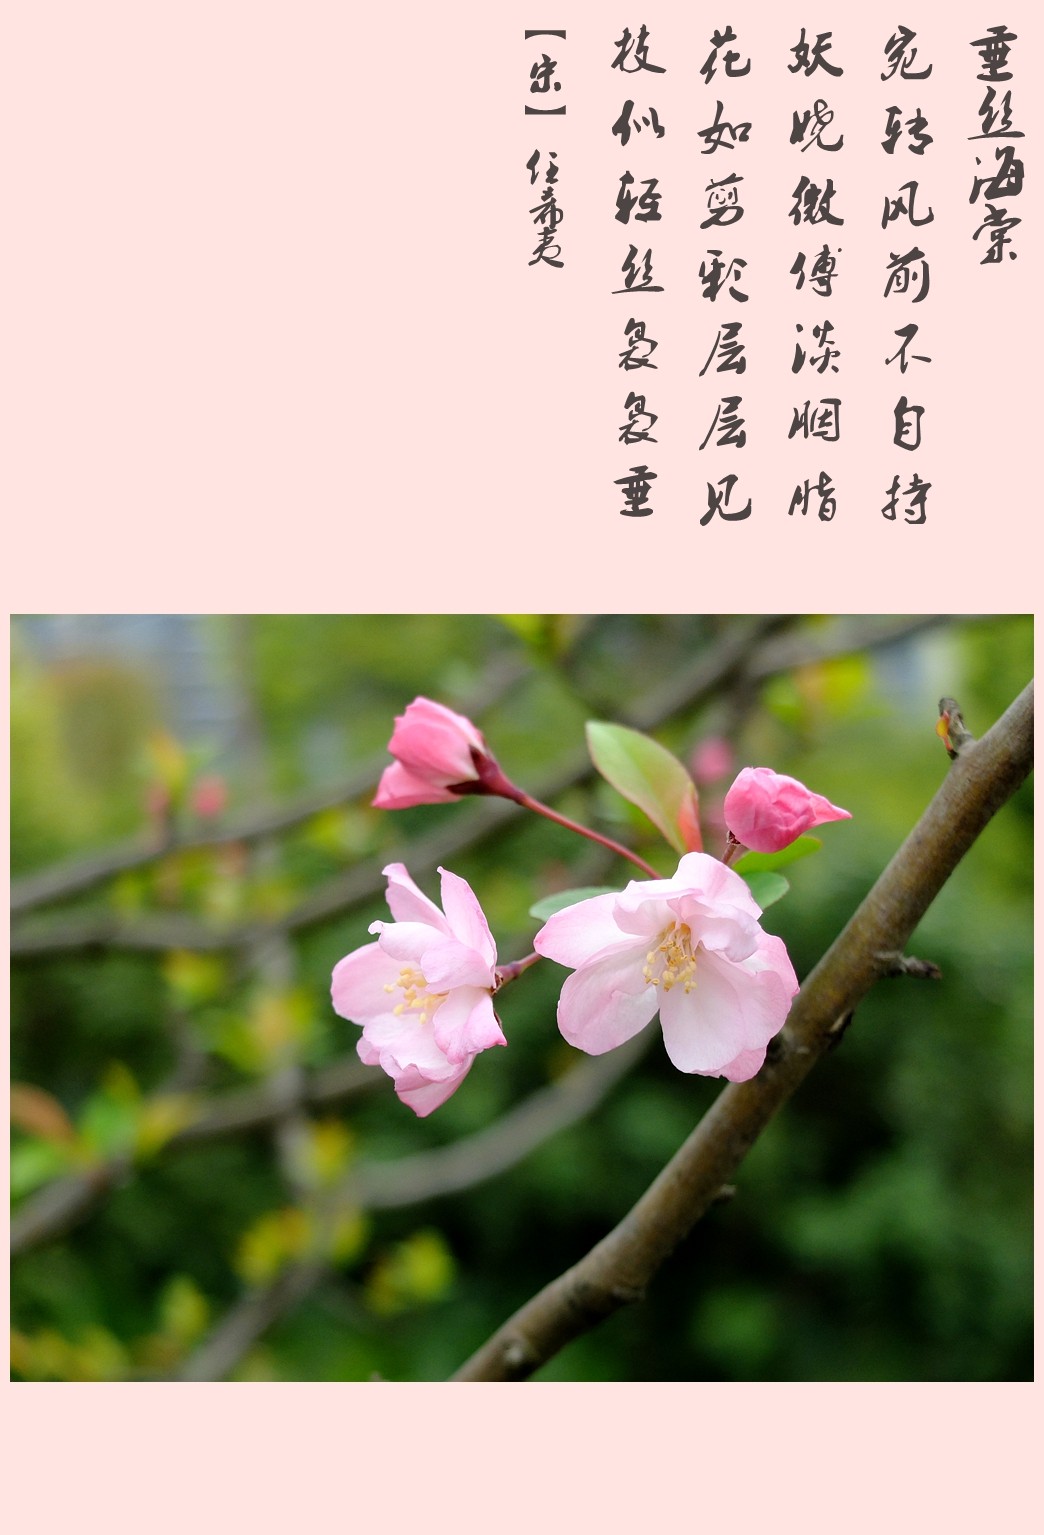 海棠花花语寓意图片